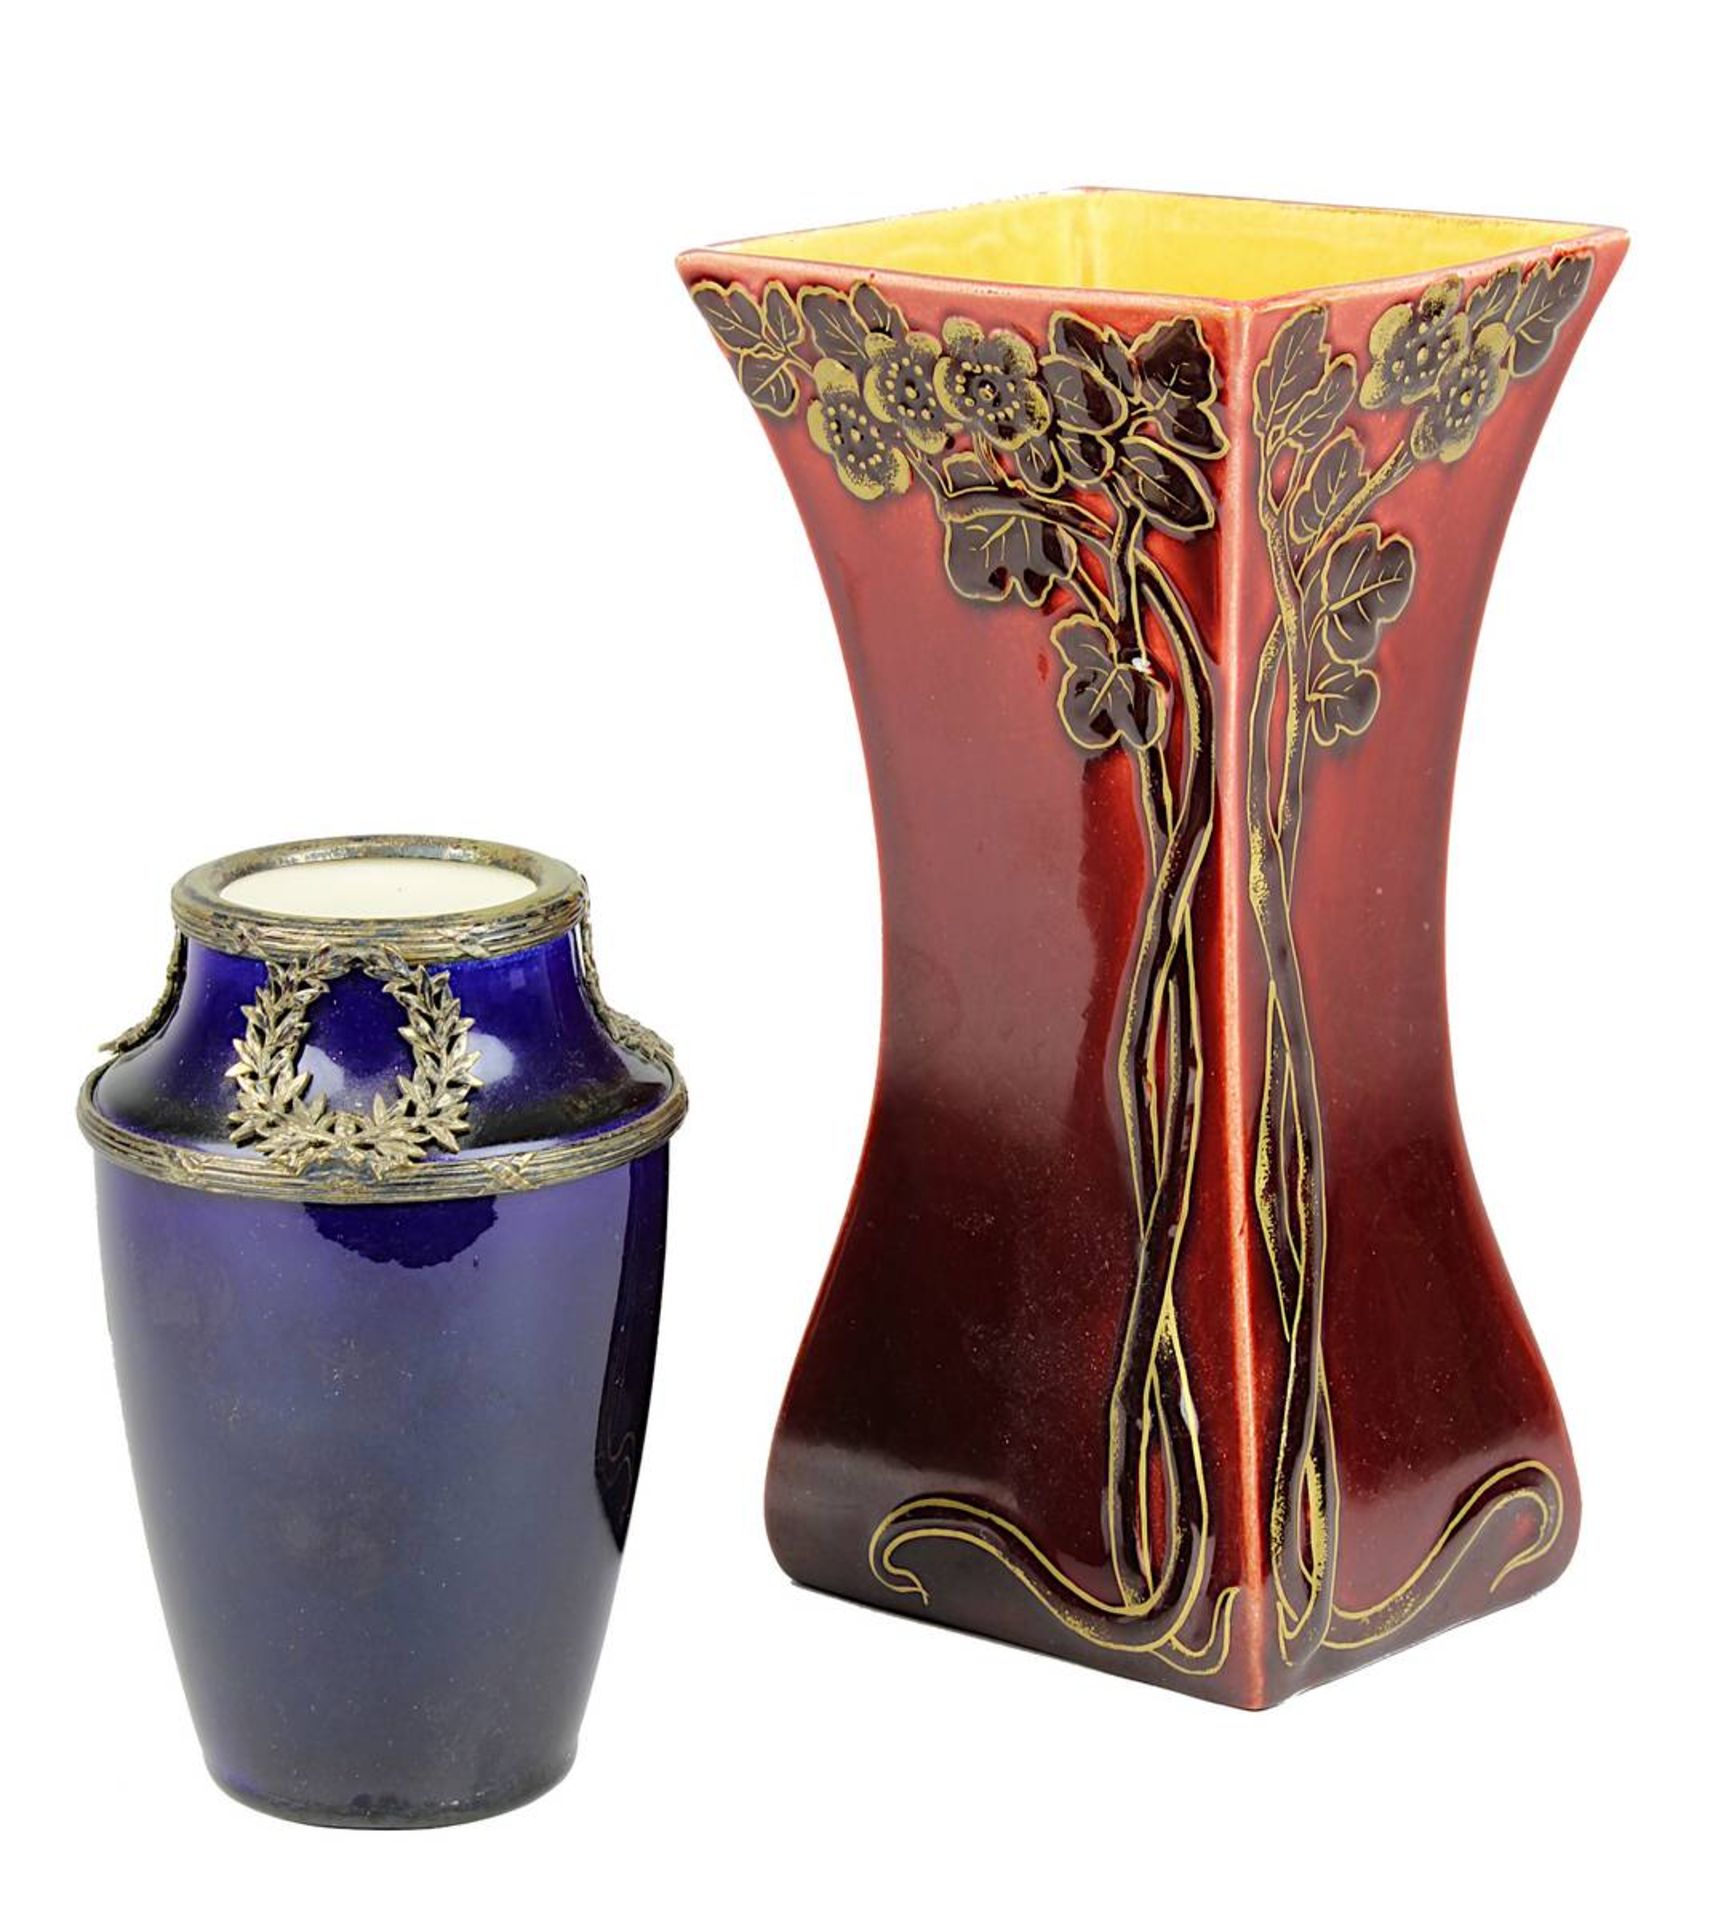 Zwei Sarreguemines Jugendstil Vasen, um 1900, Keramik, heller Scherben, eine Vase mit blauer